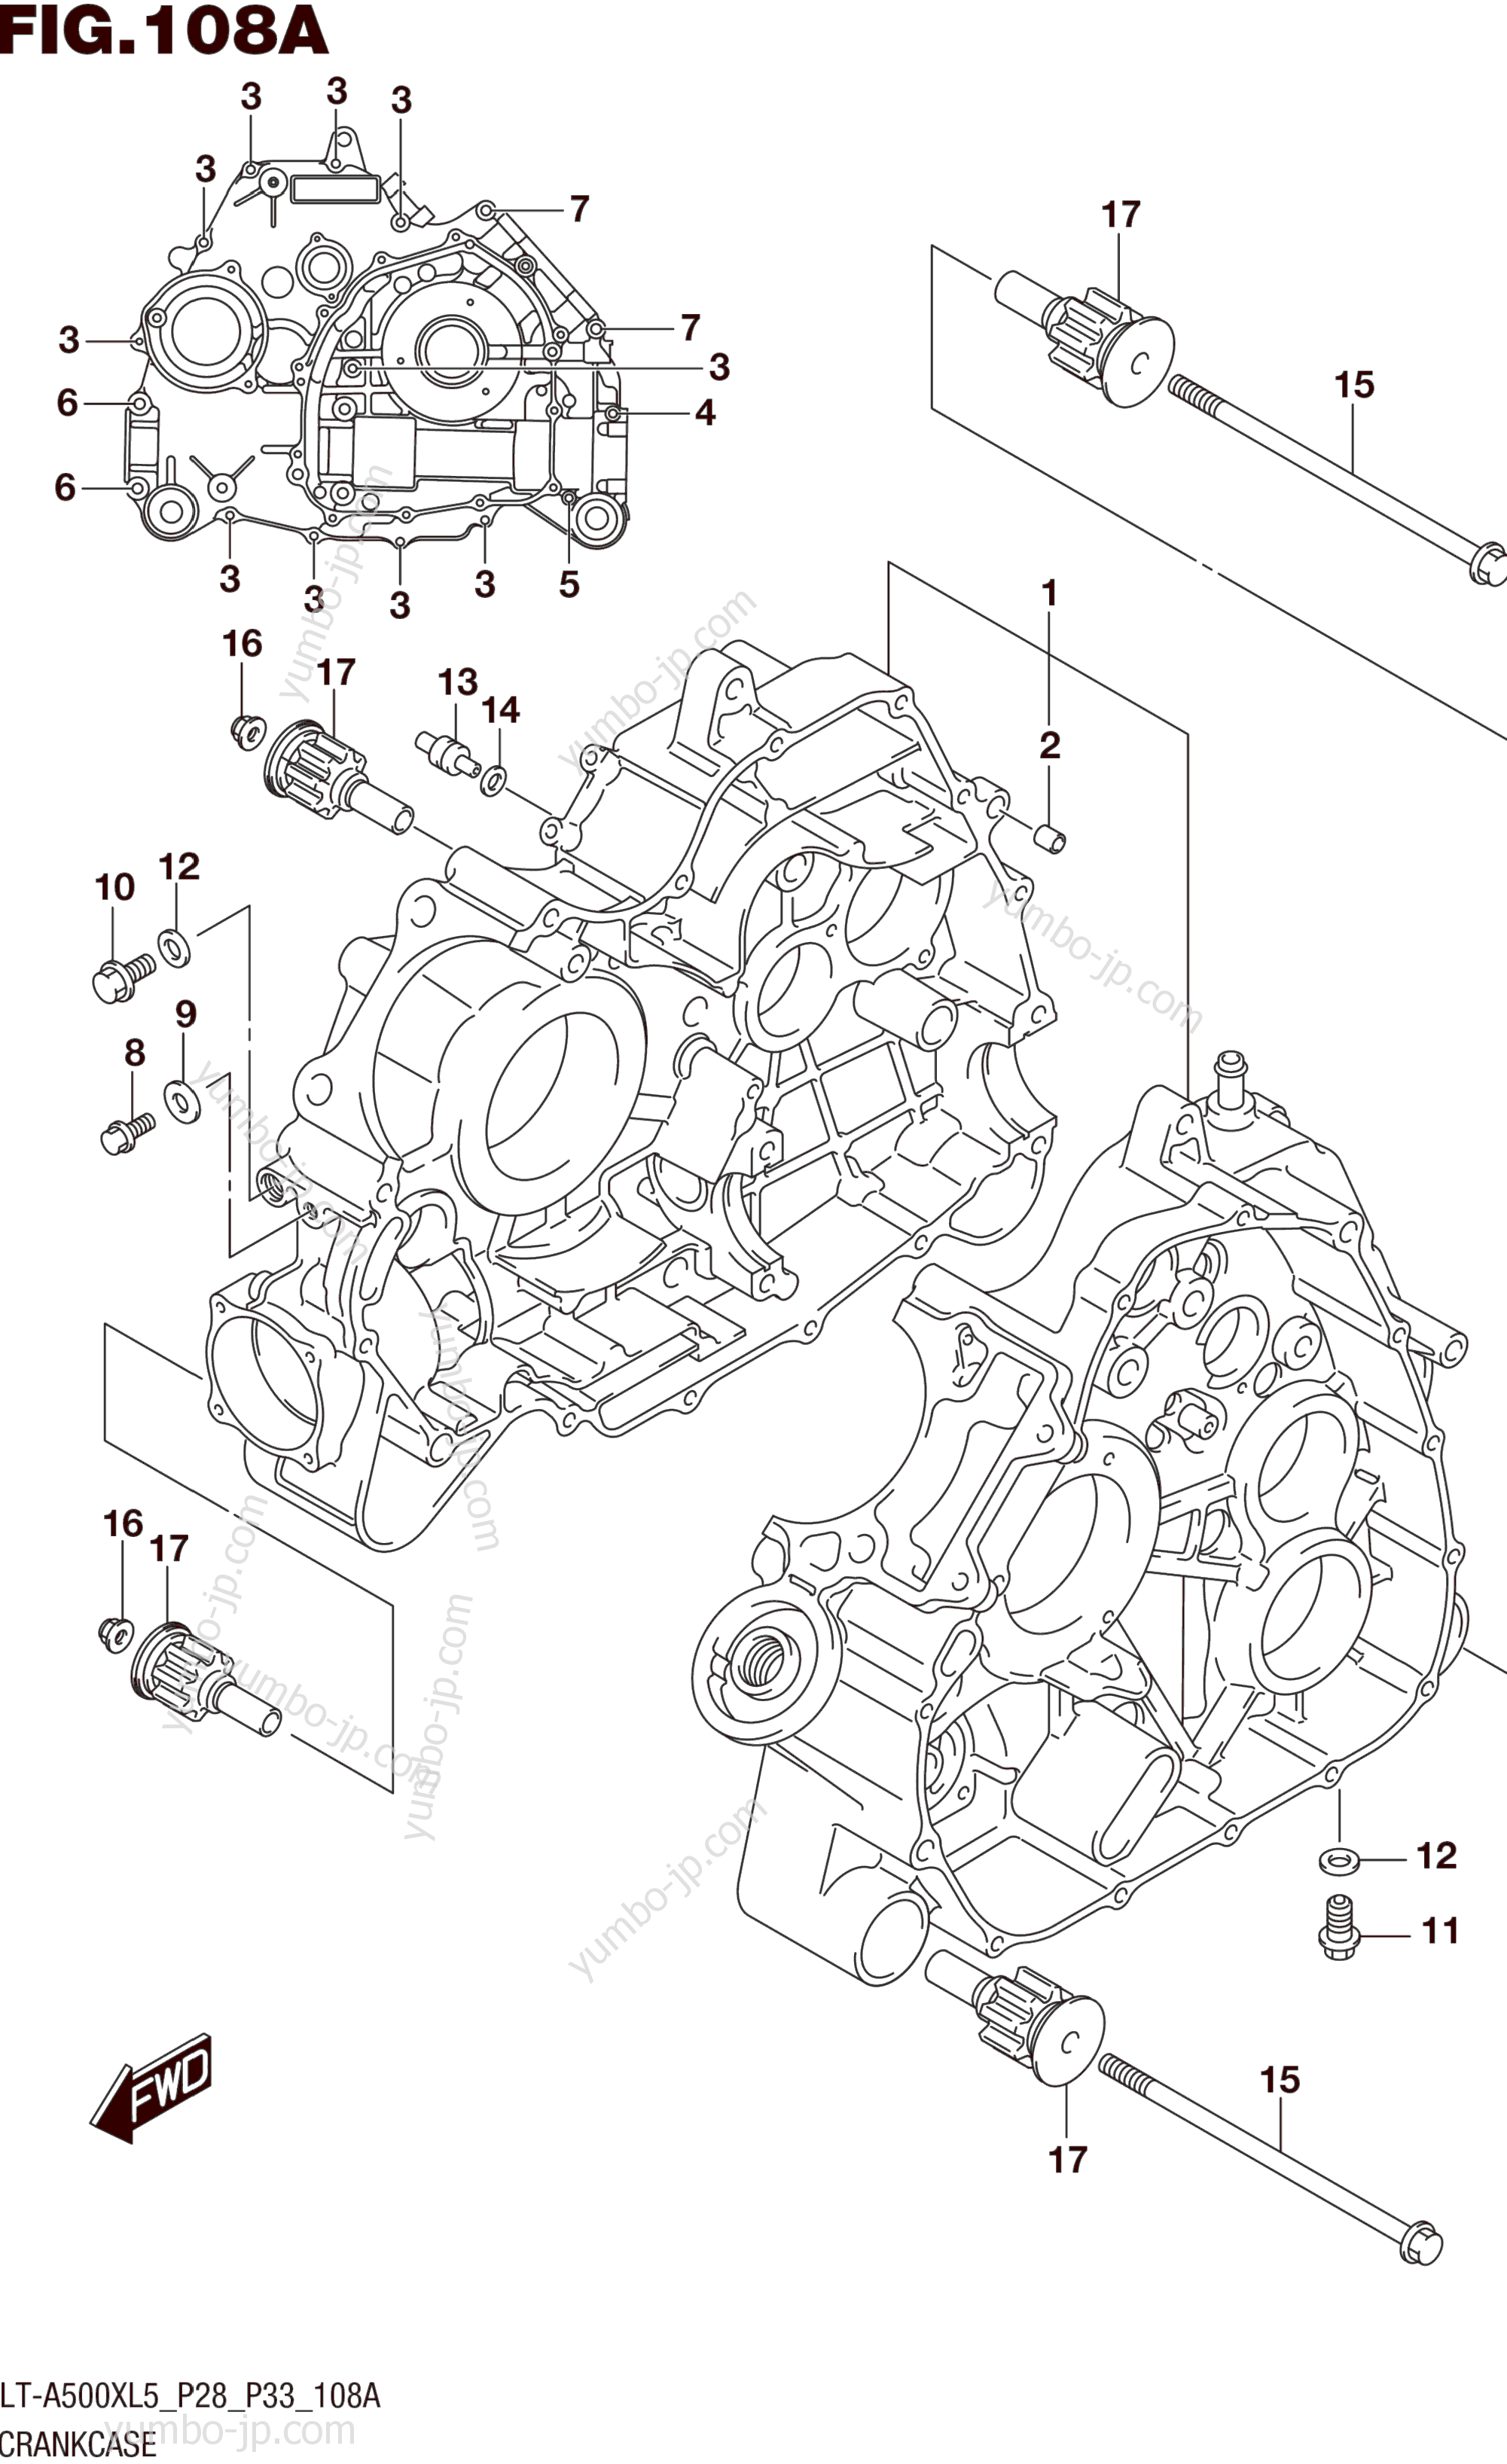 CRANKCASE for ATVs SUZUKI LT-A500X 2015 year